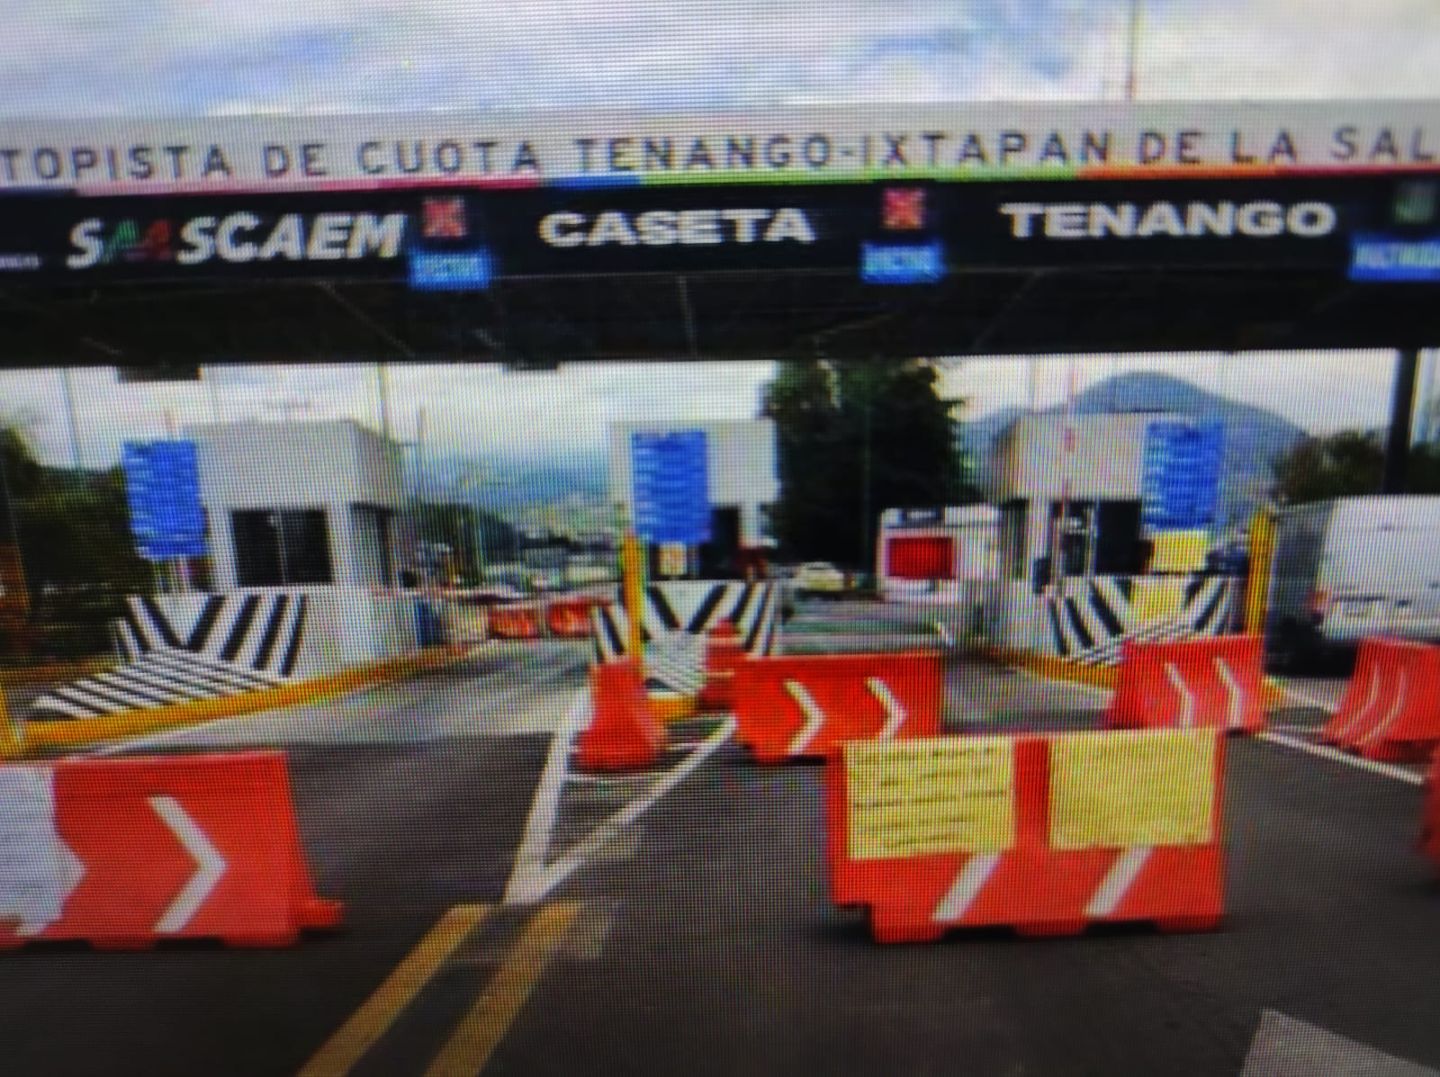 #Vecinos de Villa Guerrero que piden mejoras en escuelas cerraron caseta de pista